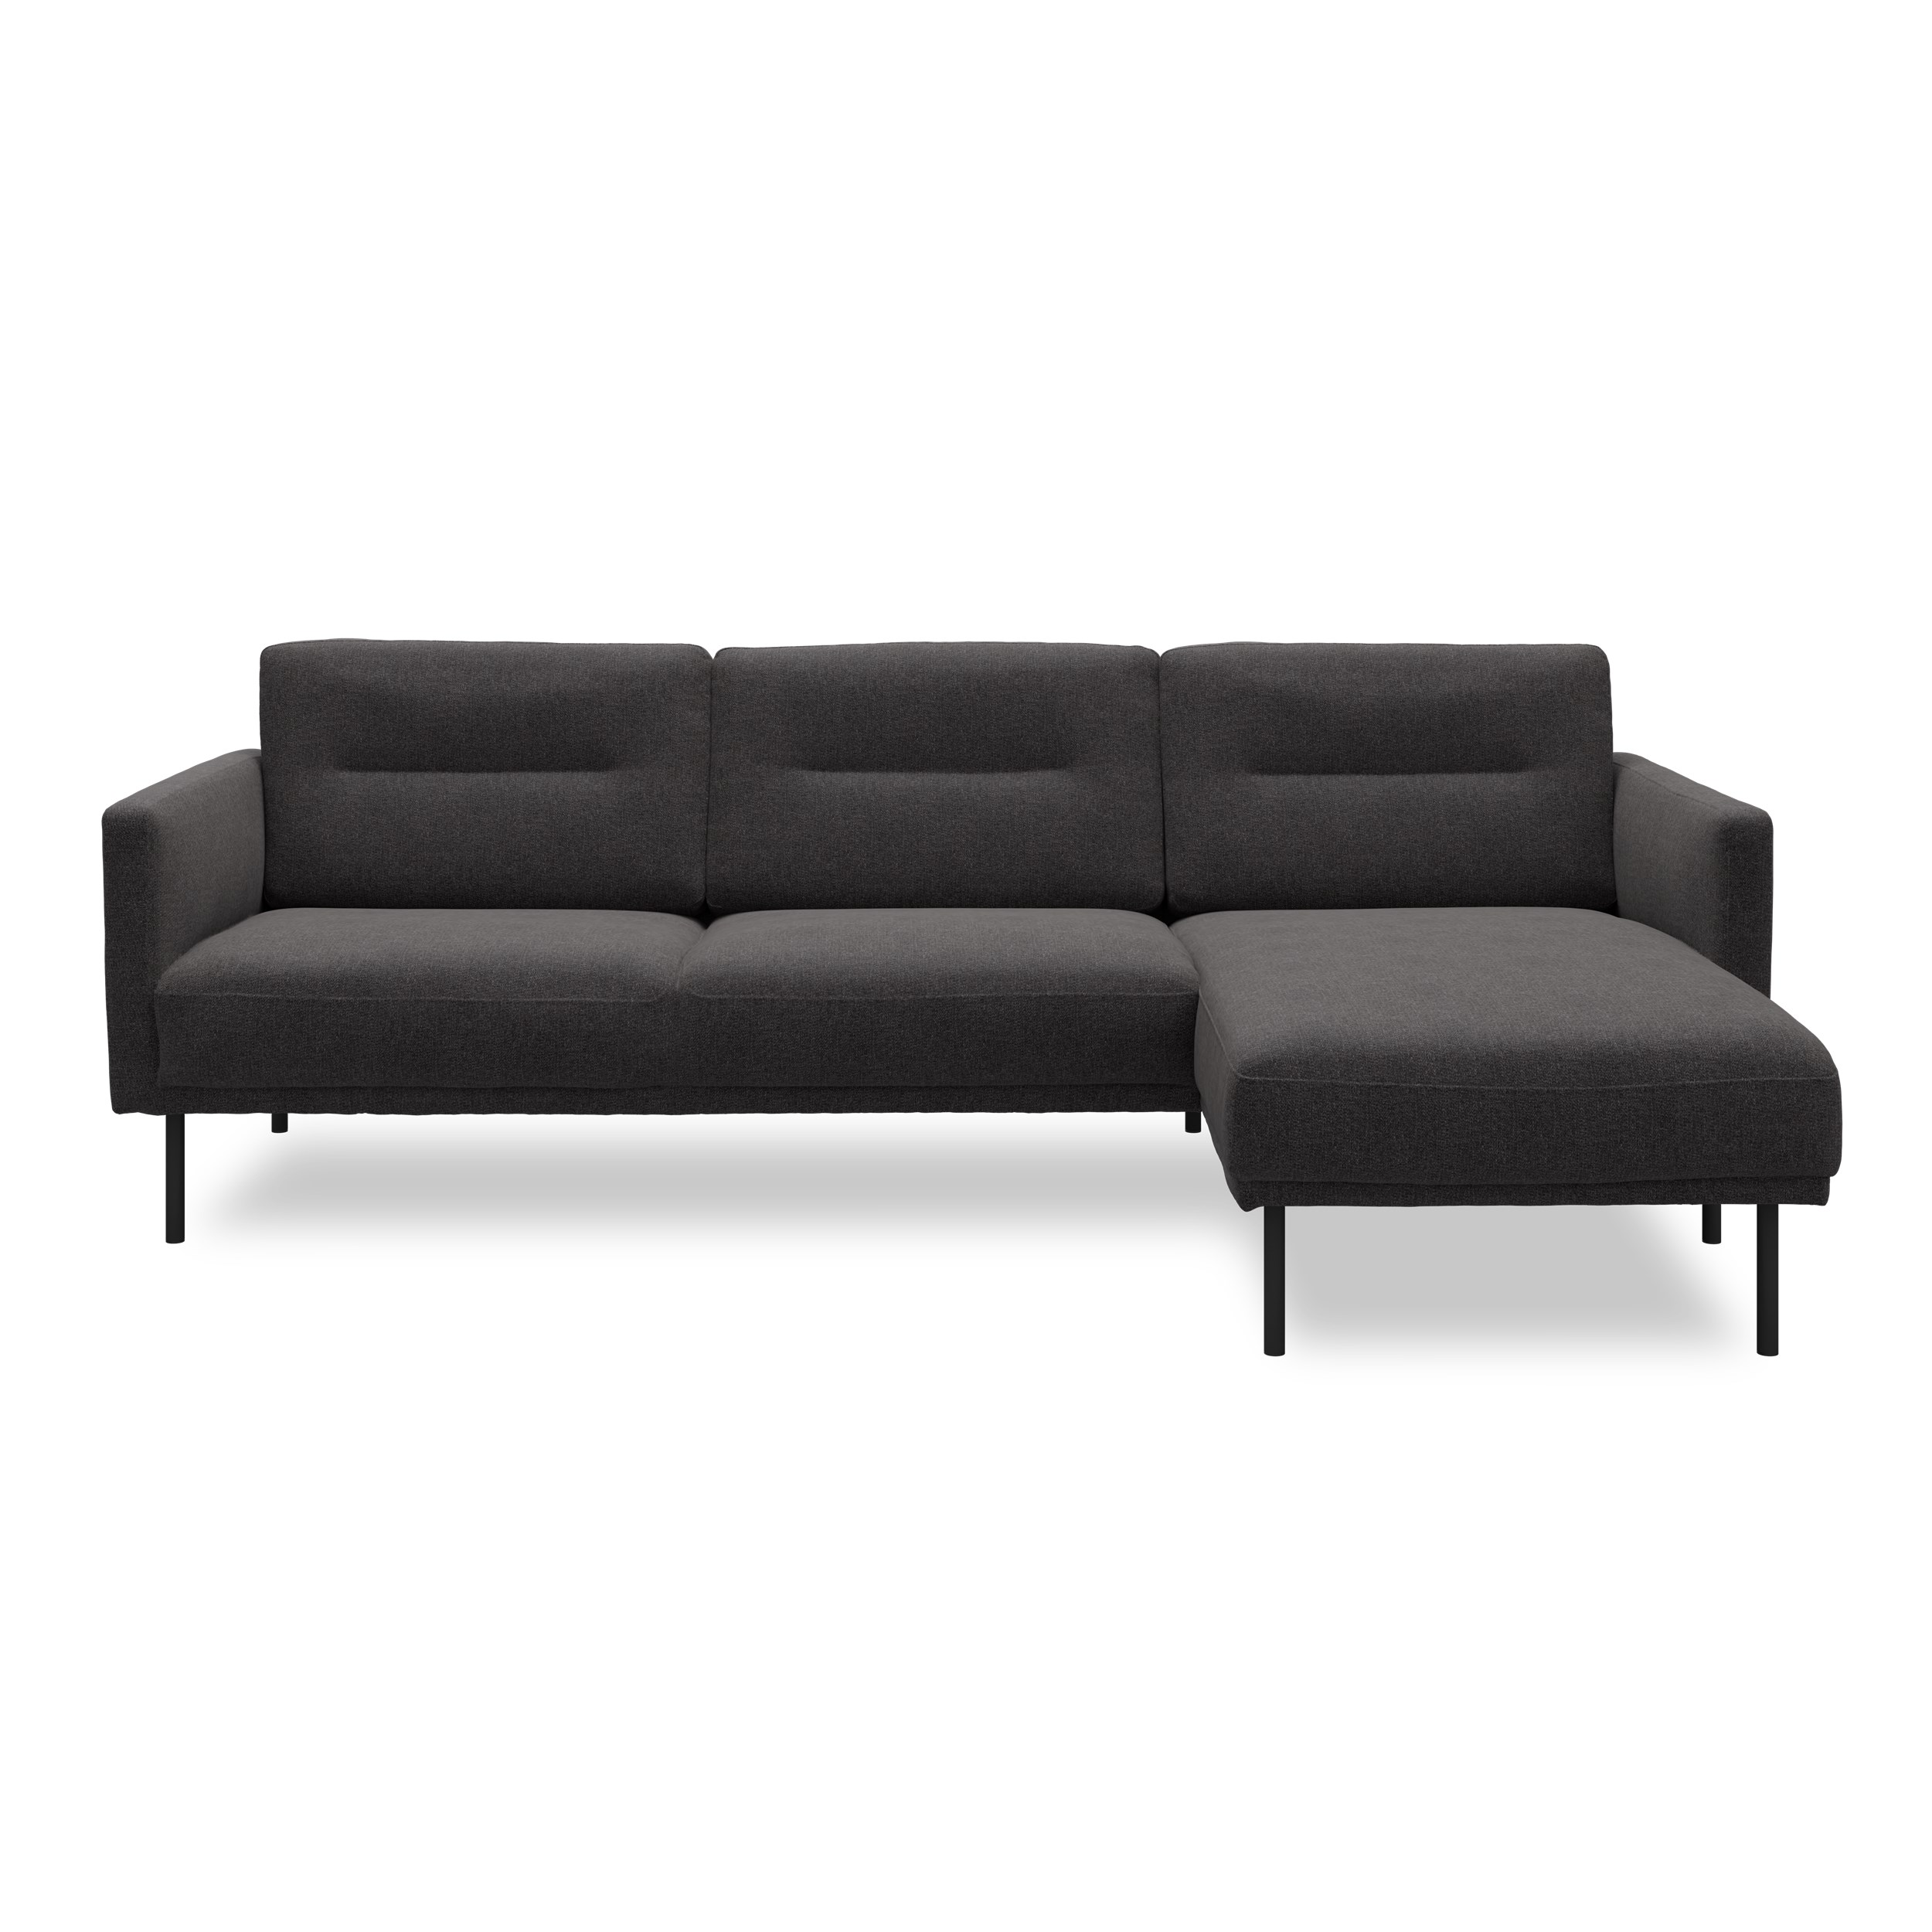 Larvik Sofa med chaiselong - Hampton 370 Antracite stof og ben i sortlakeret metal